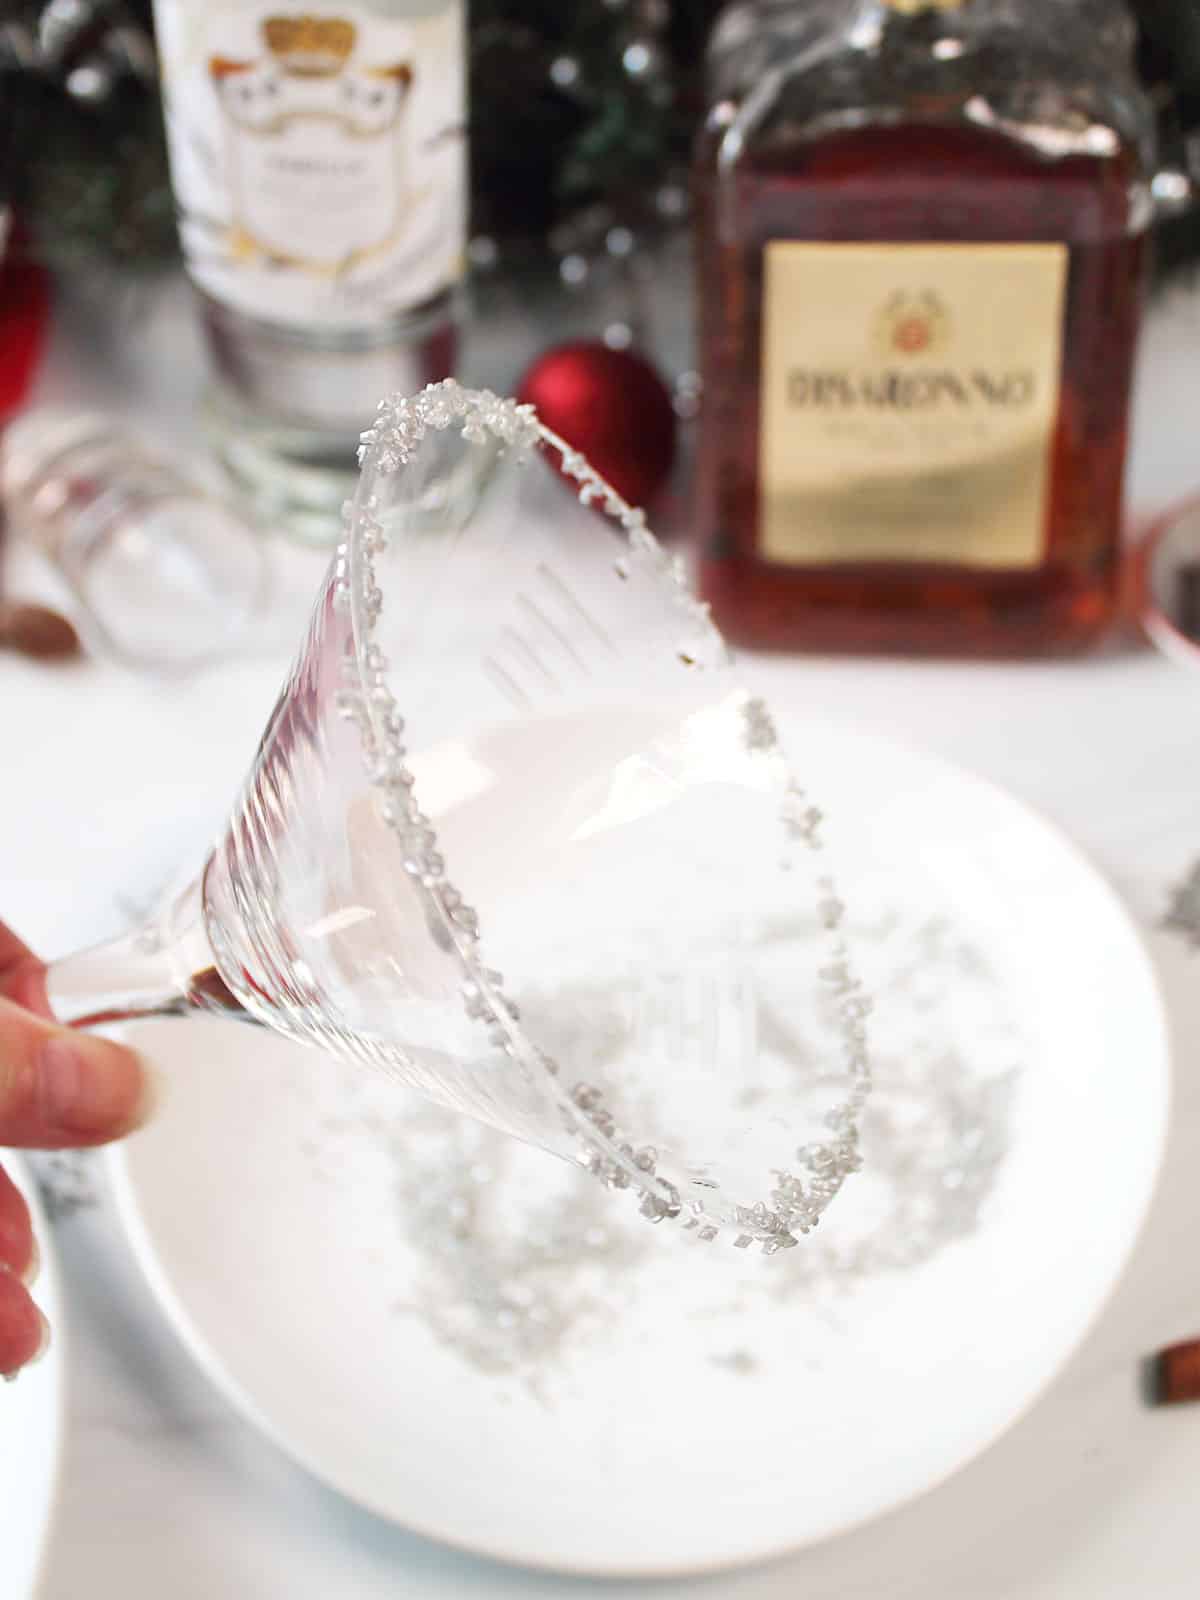 Dipping the martini glass in silver glitter sugar.